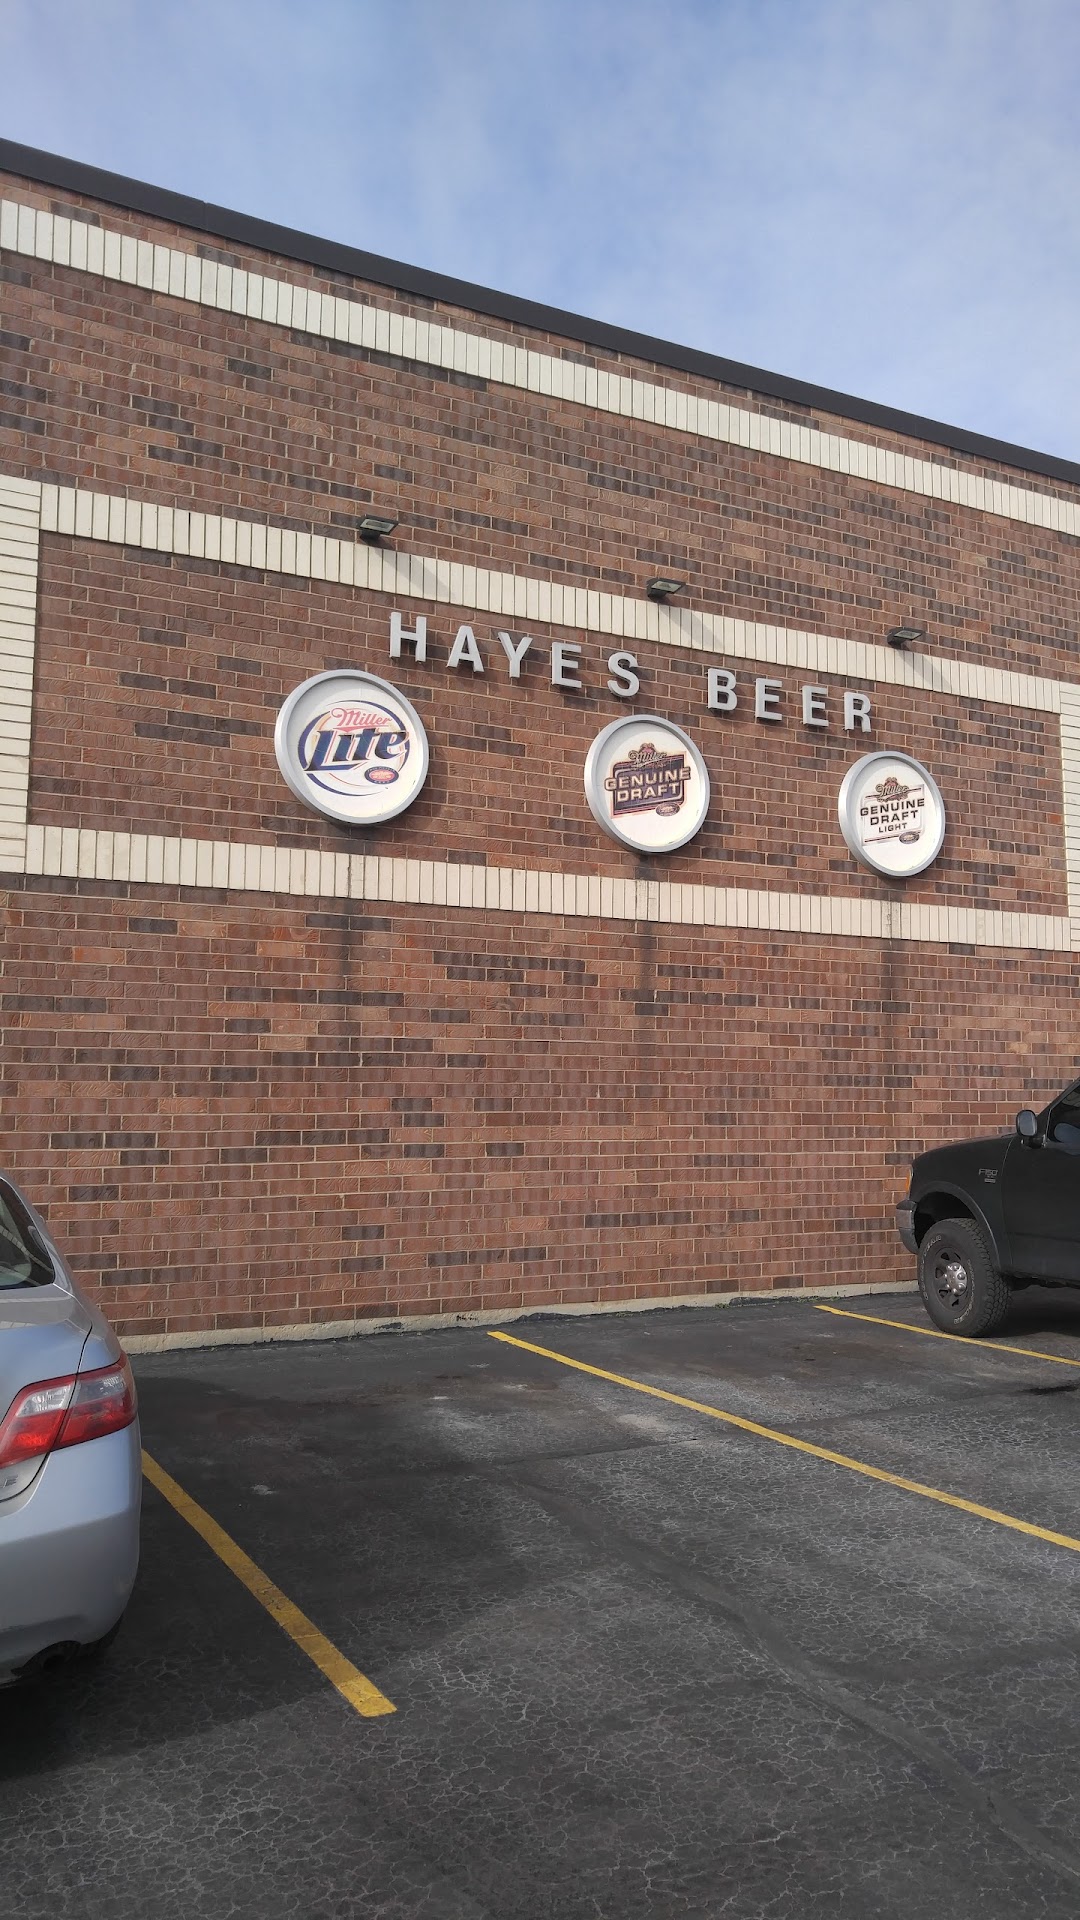 Hayes Beer Distributing Co